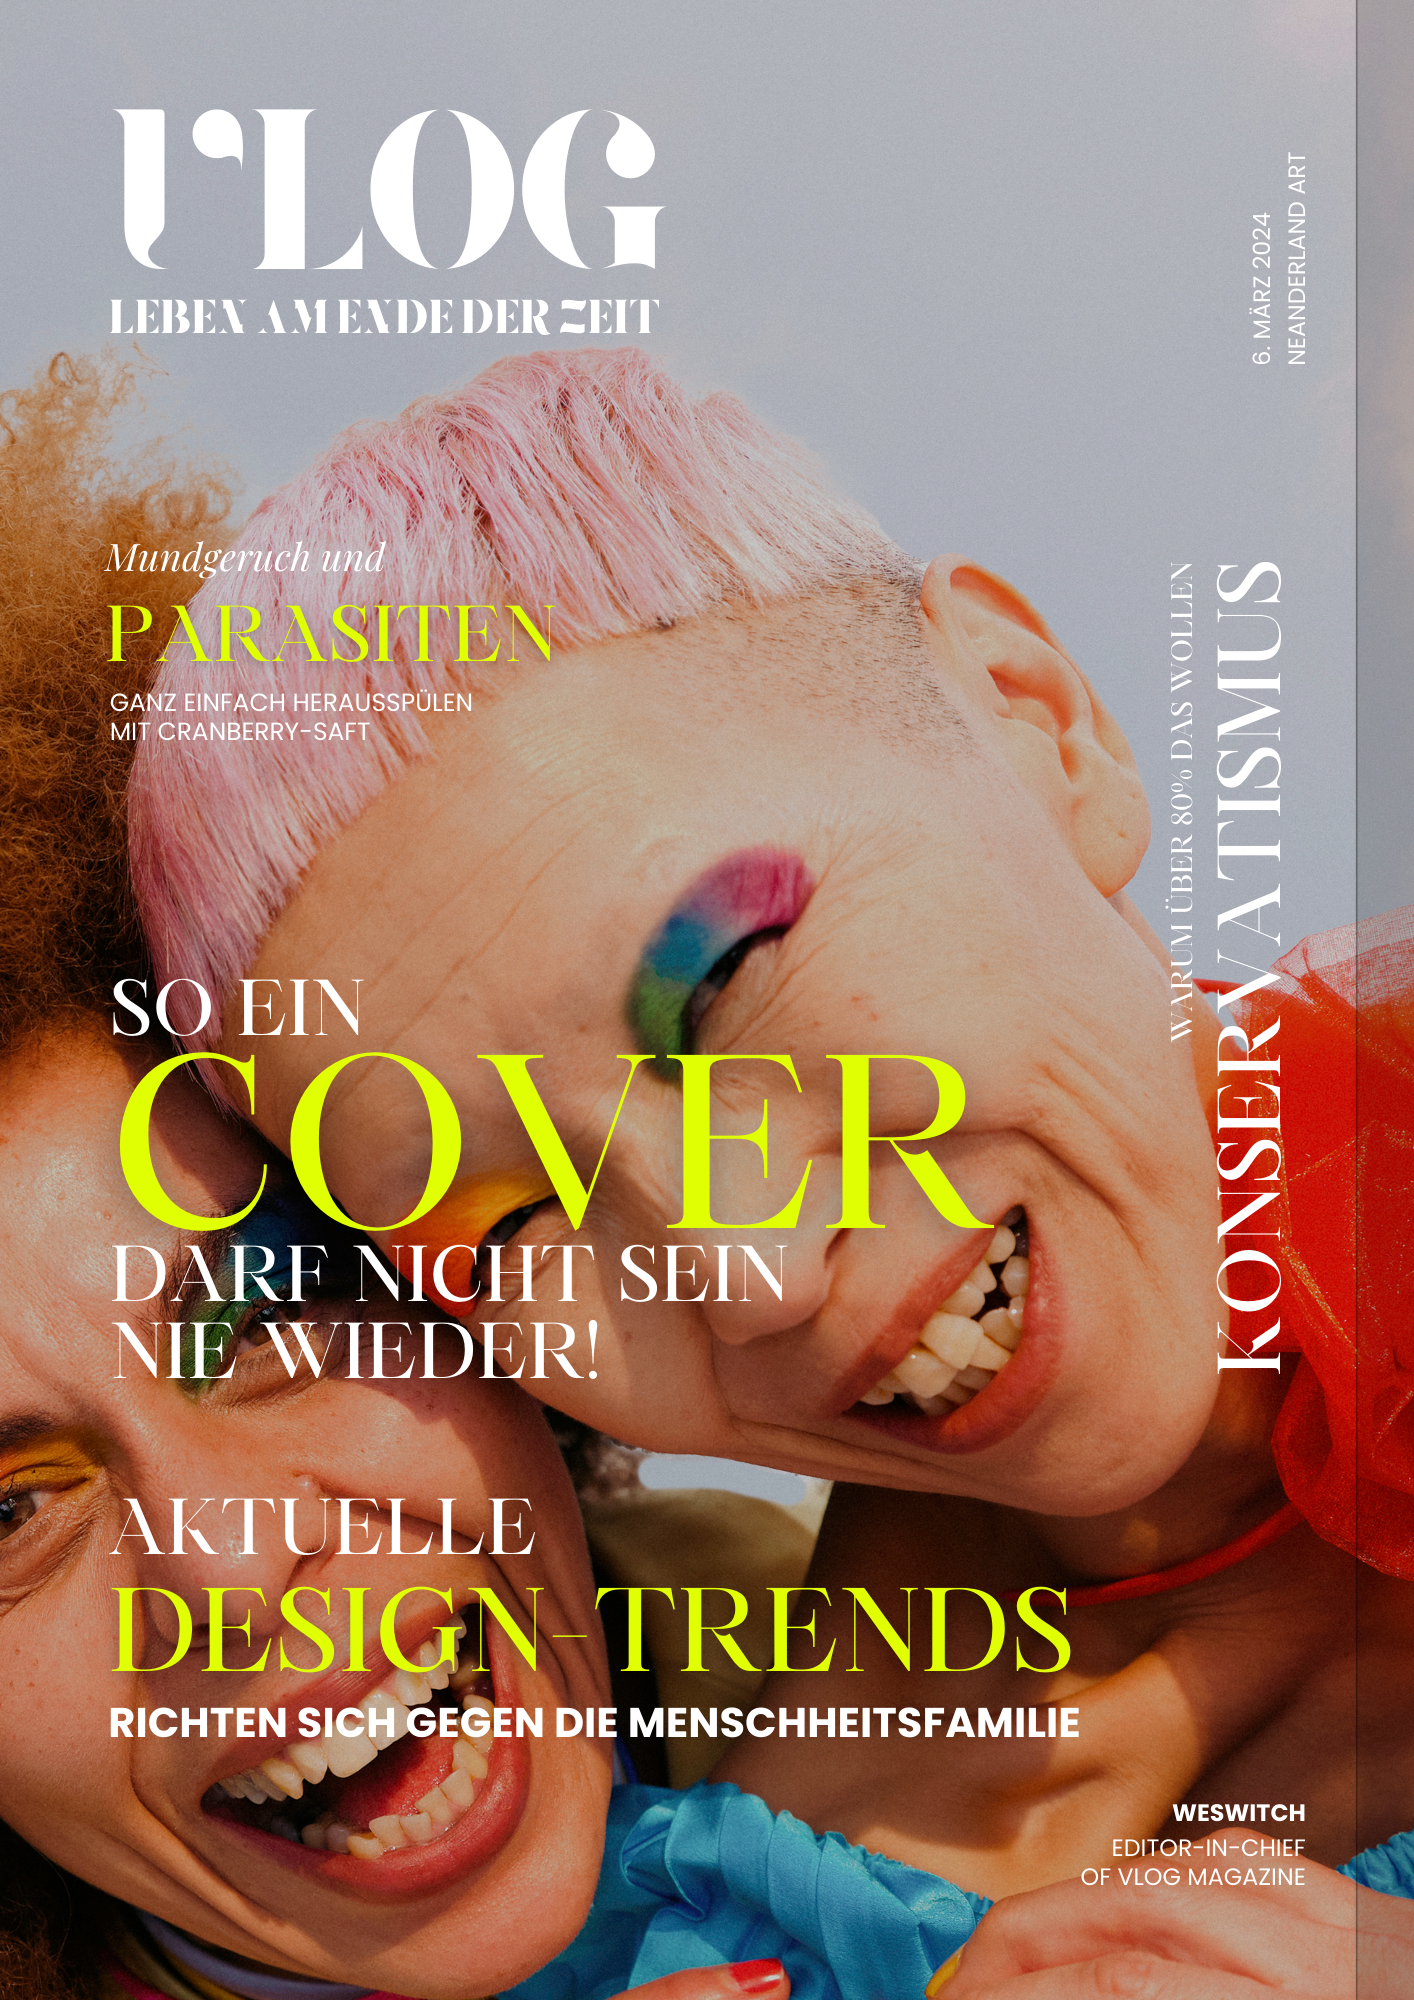 Magazin-Design mit dem Bild von 2 verliebt wirkenden Frauen mit in übertrieben bunten Farben geschminkten Augen und extravagant geschnittenen und gefärbten Haaren und dem Titel Aktuelle Design-Trends 